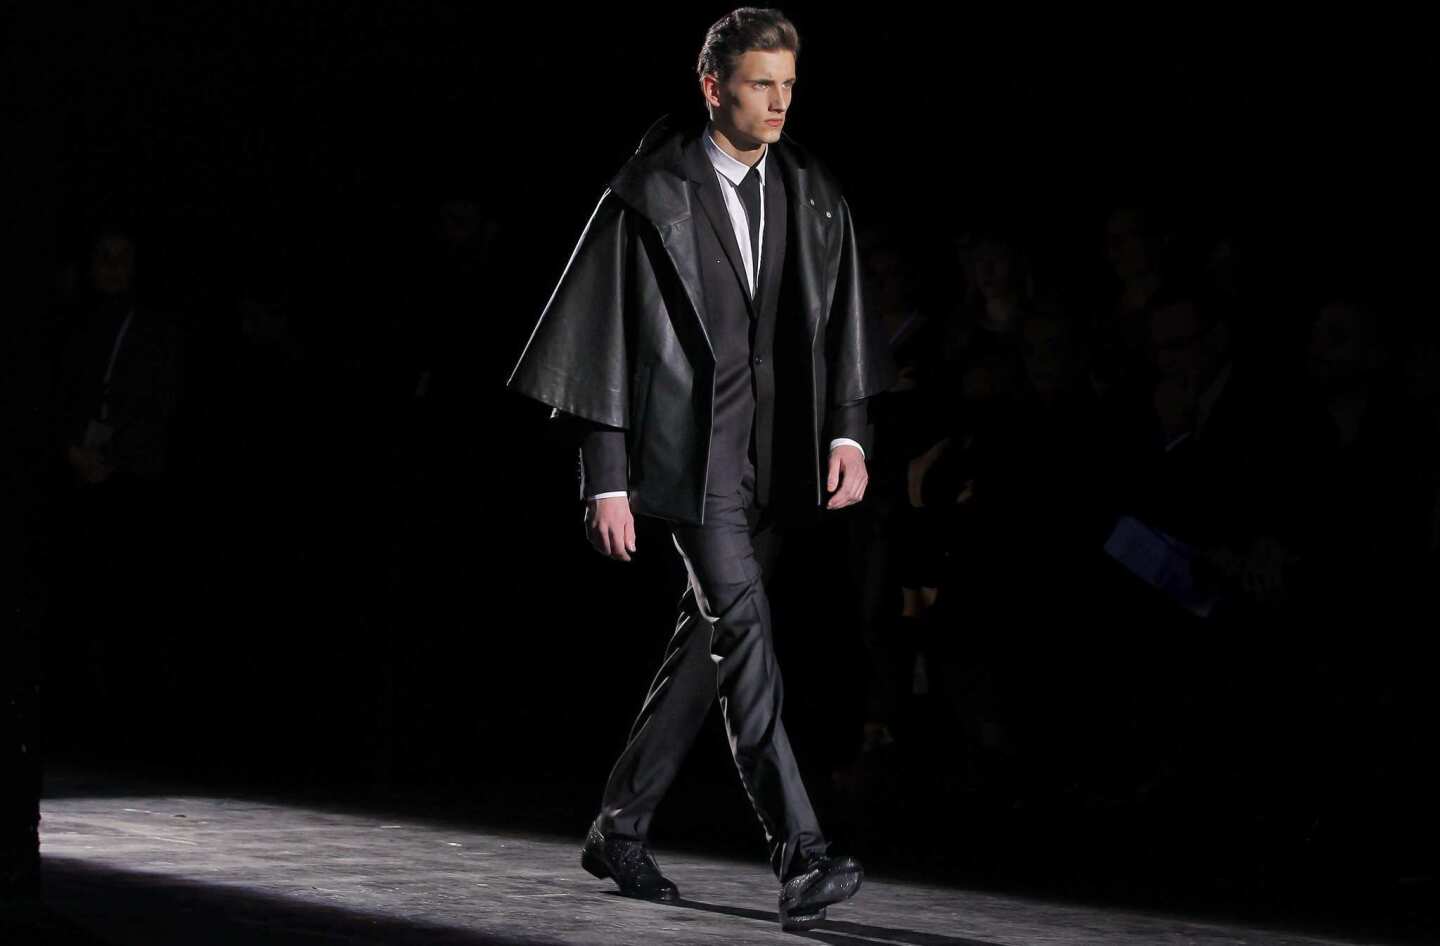 Paris Fashion Week Men's collections FW 2012/13 - Mugler